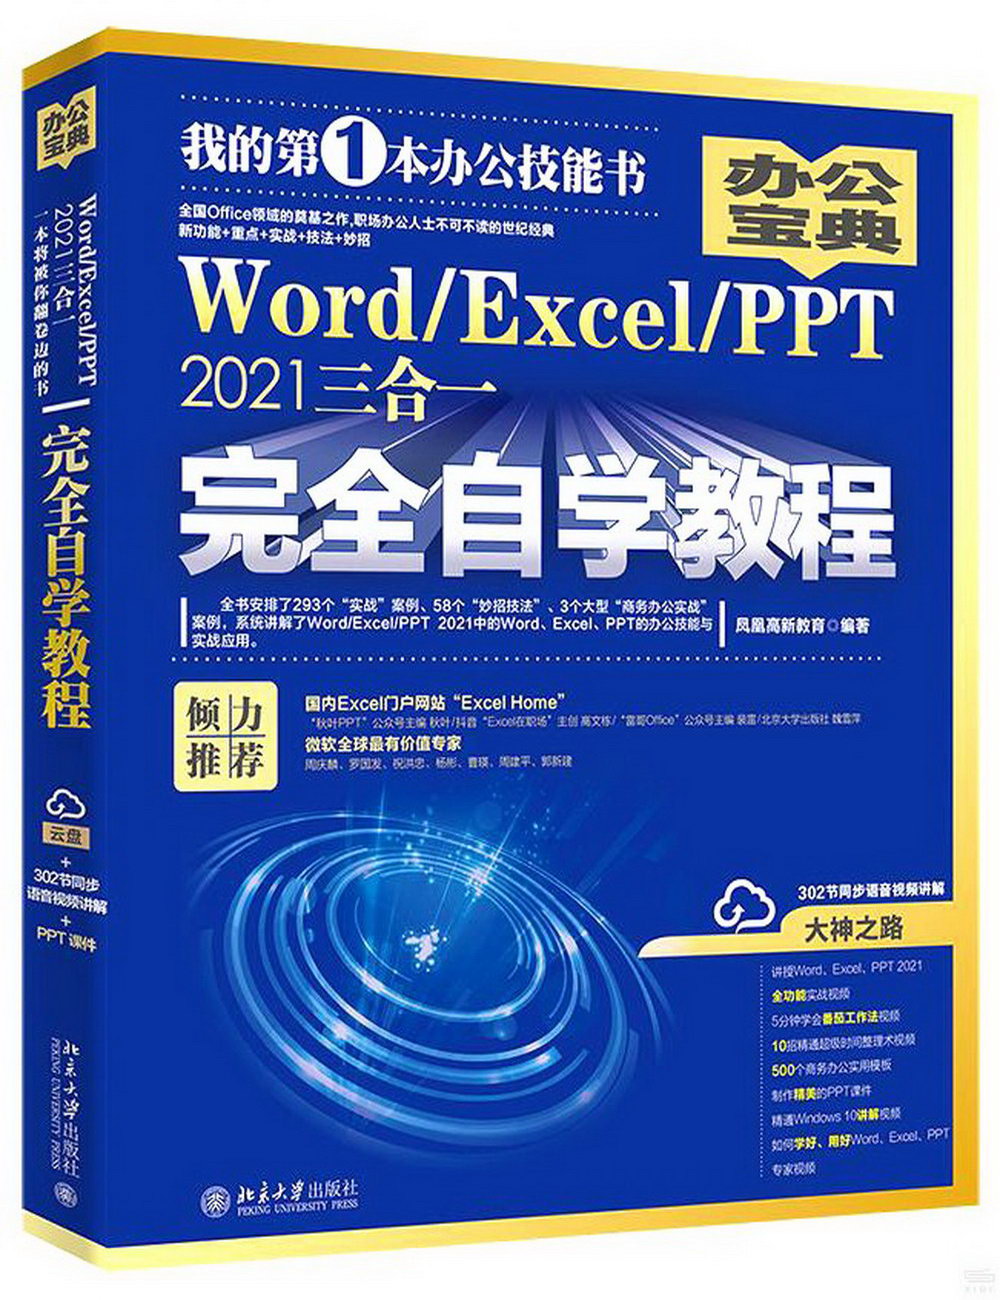 Word/Excel/PPT 2021三合一完全自學教程